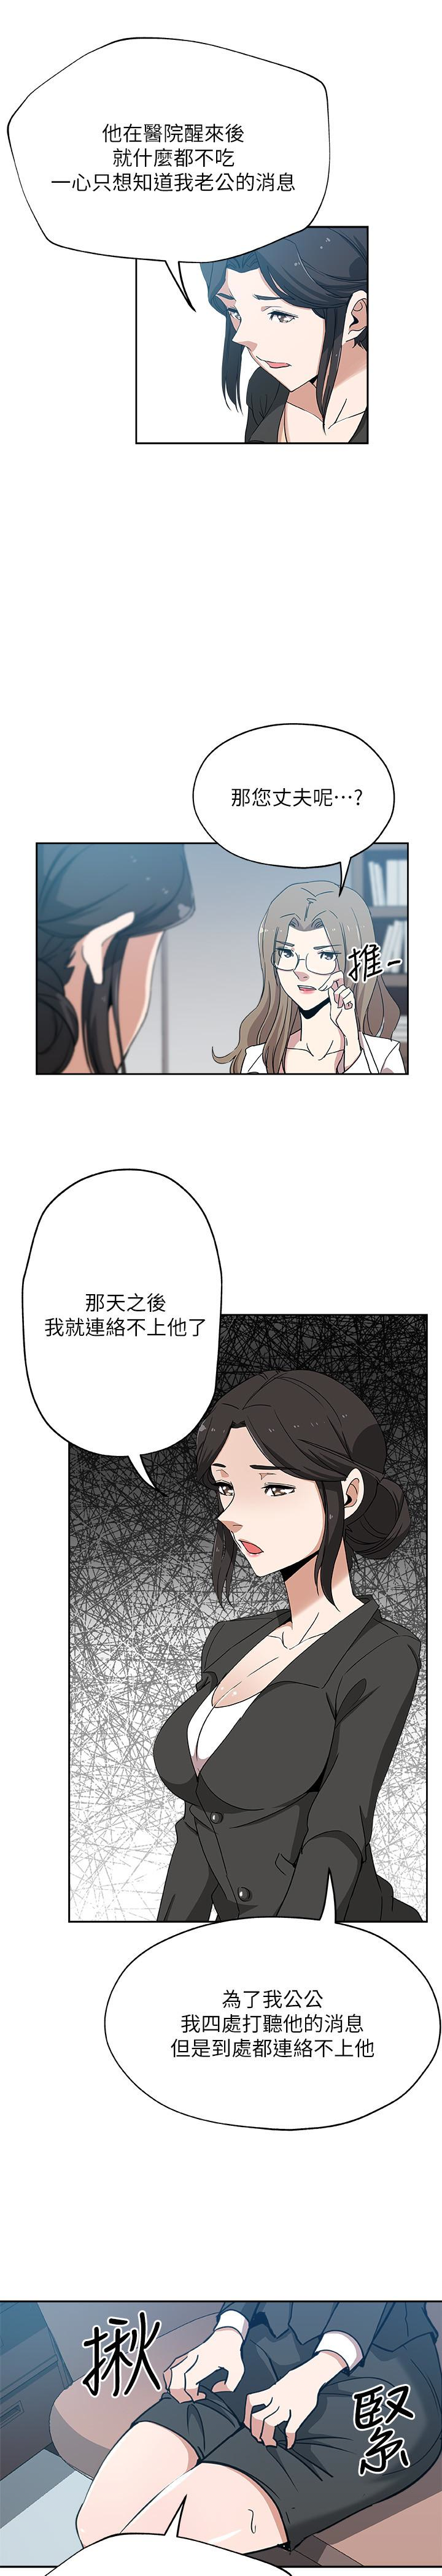 韩国污漫画 新媳婦 最终话-天谴 21